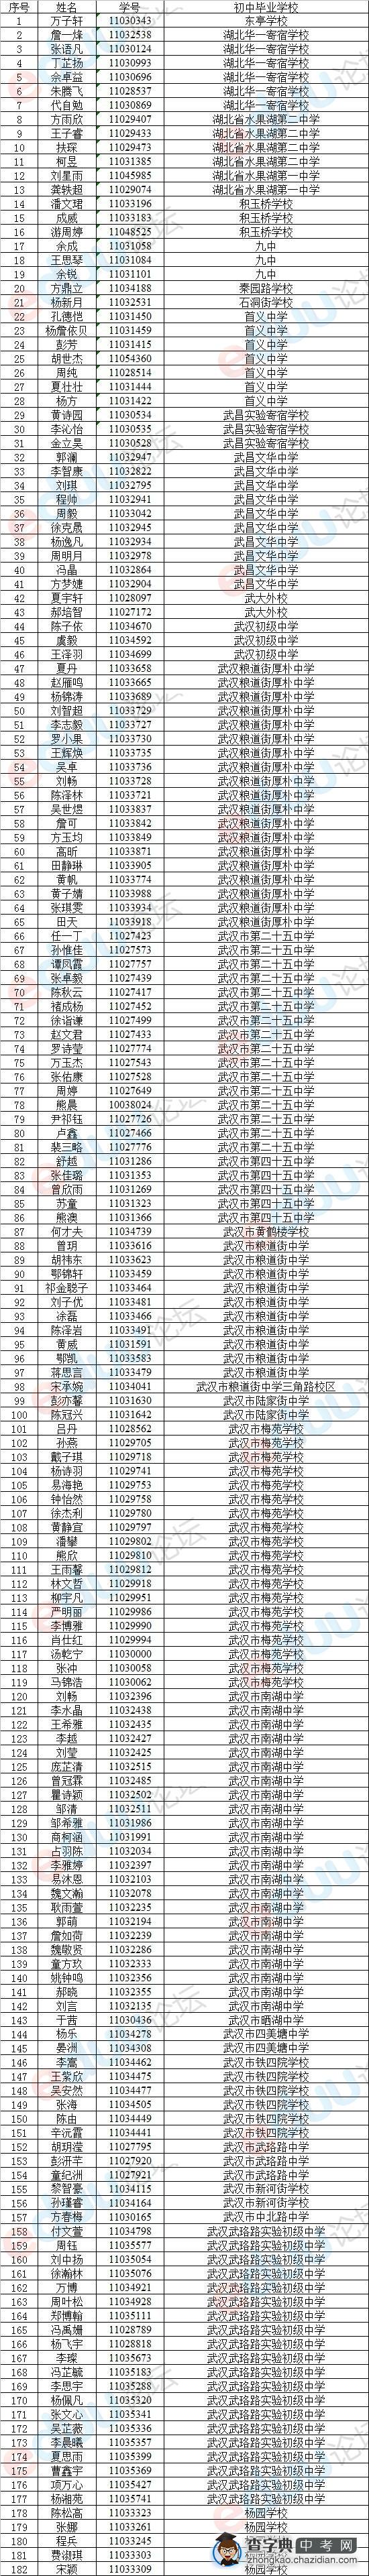 2014年武汉十四中分配生名单出炉1